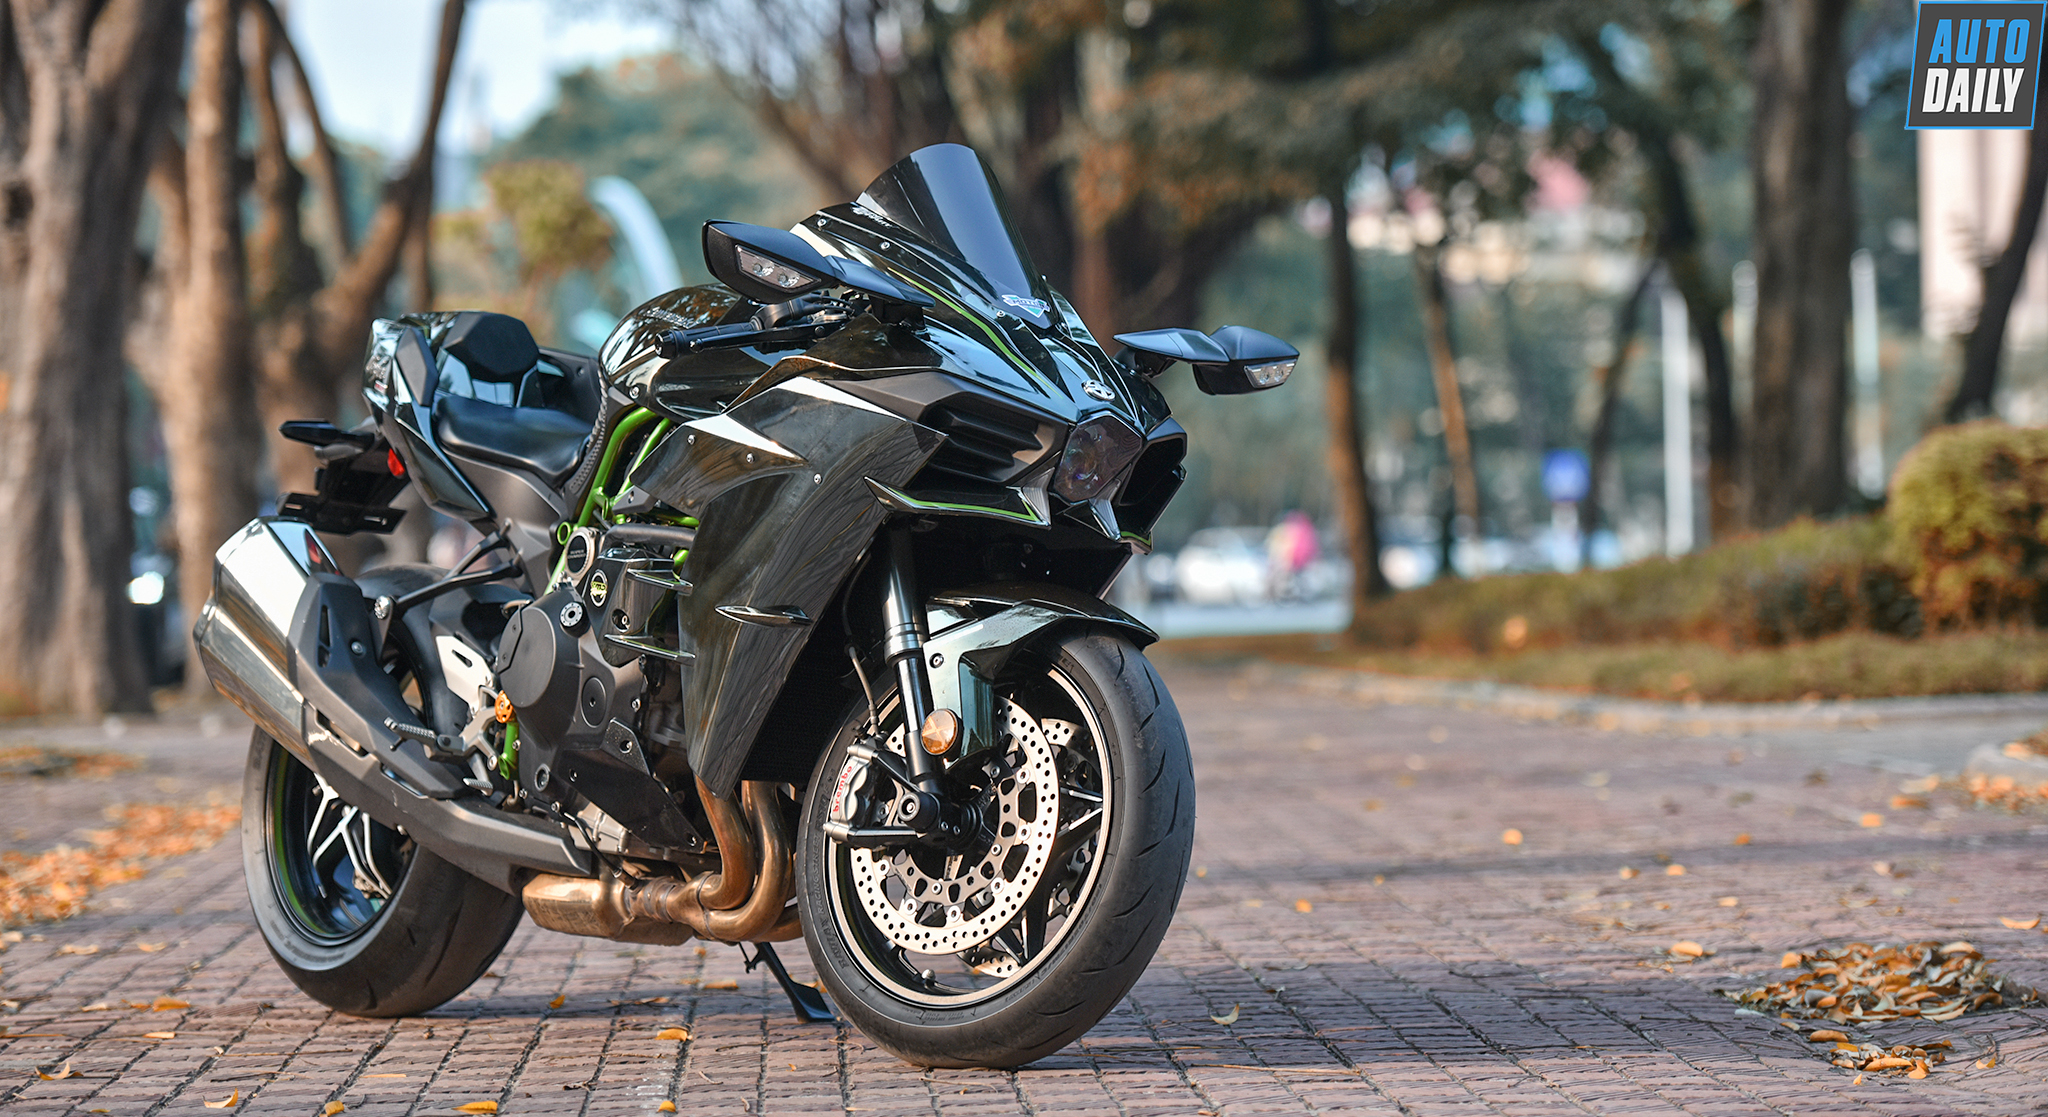 Siêu môtô Kawasaki Ninja H2 siêu lướt giá 850 triệu tại Hà Nội